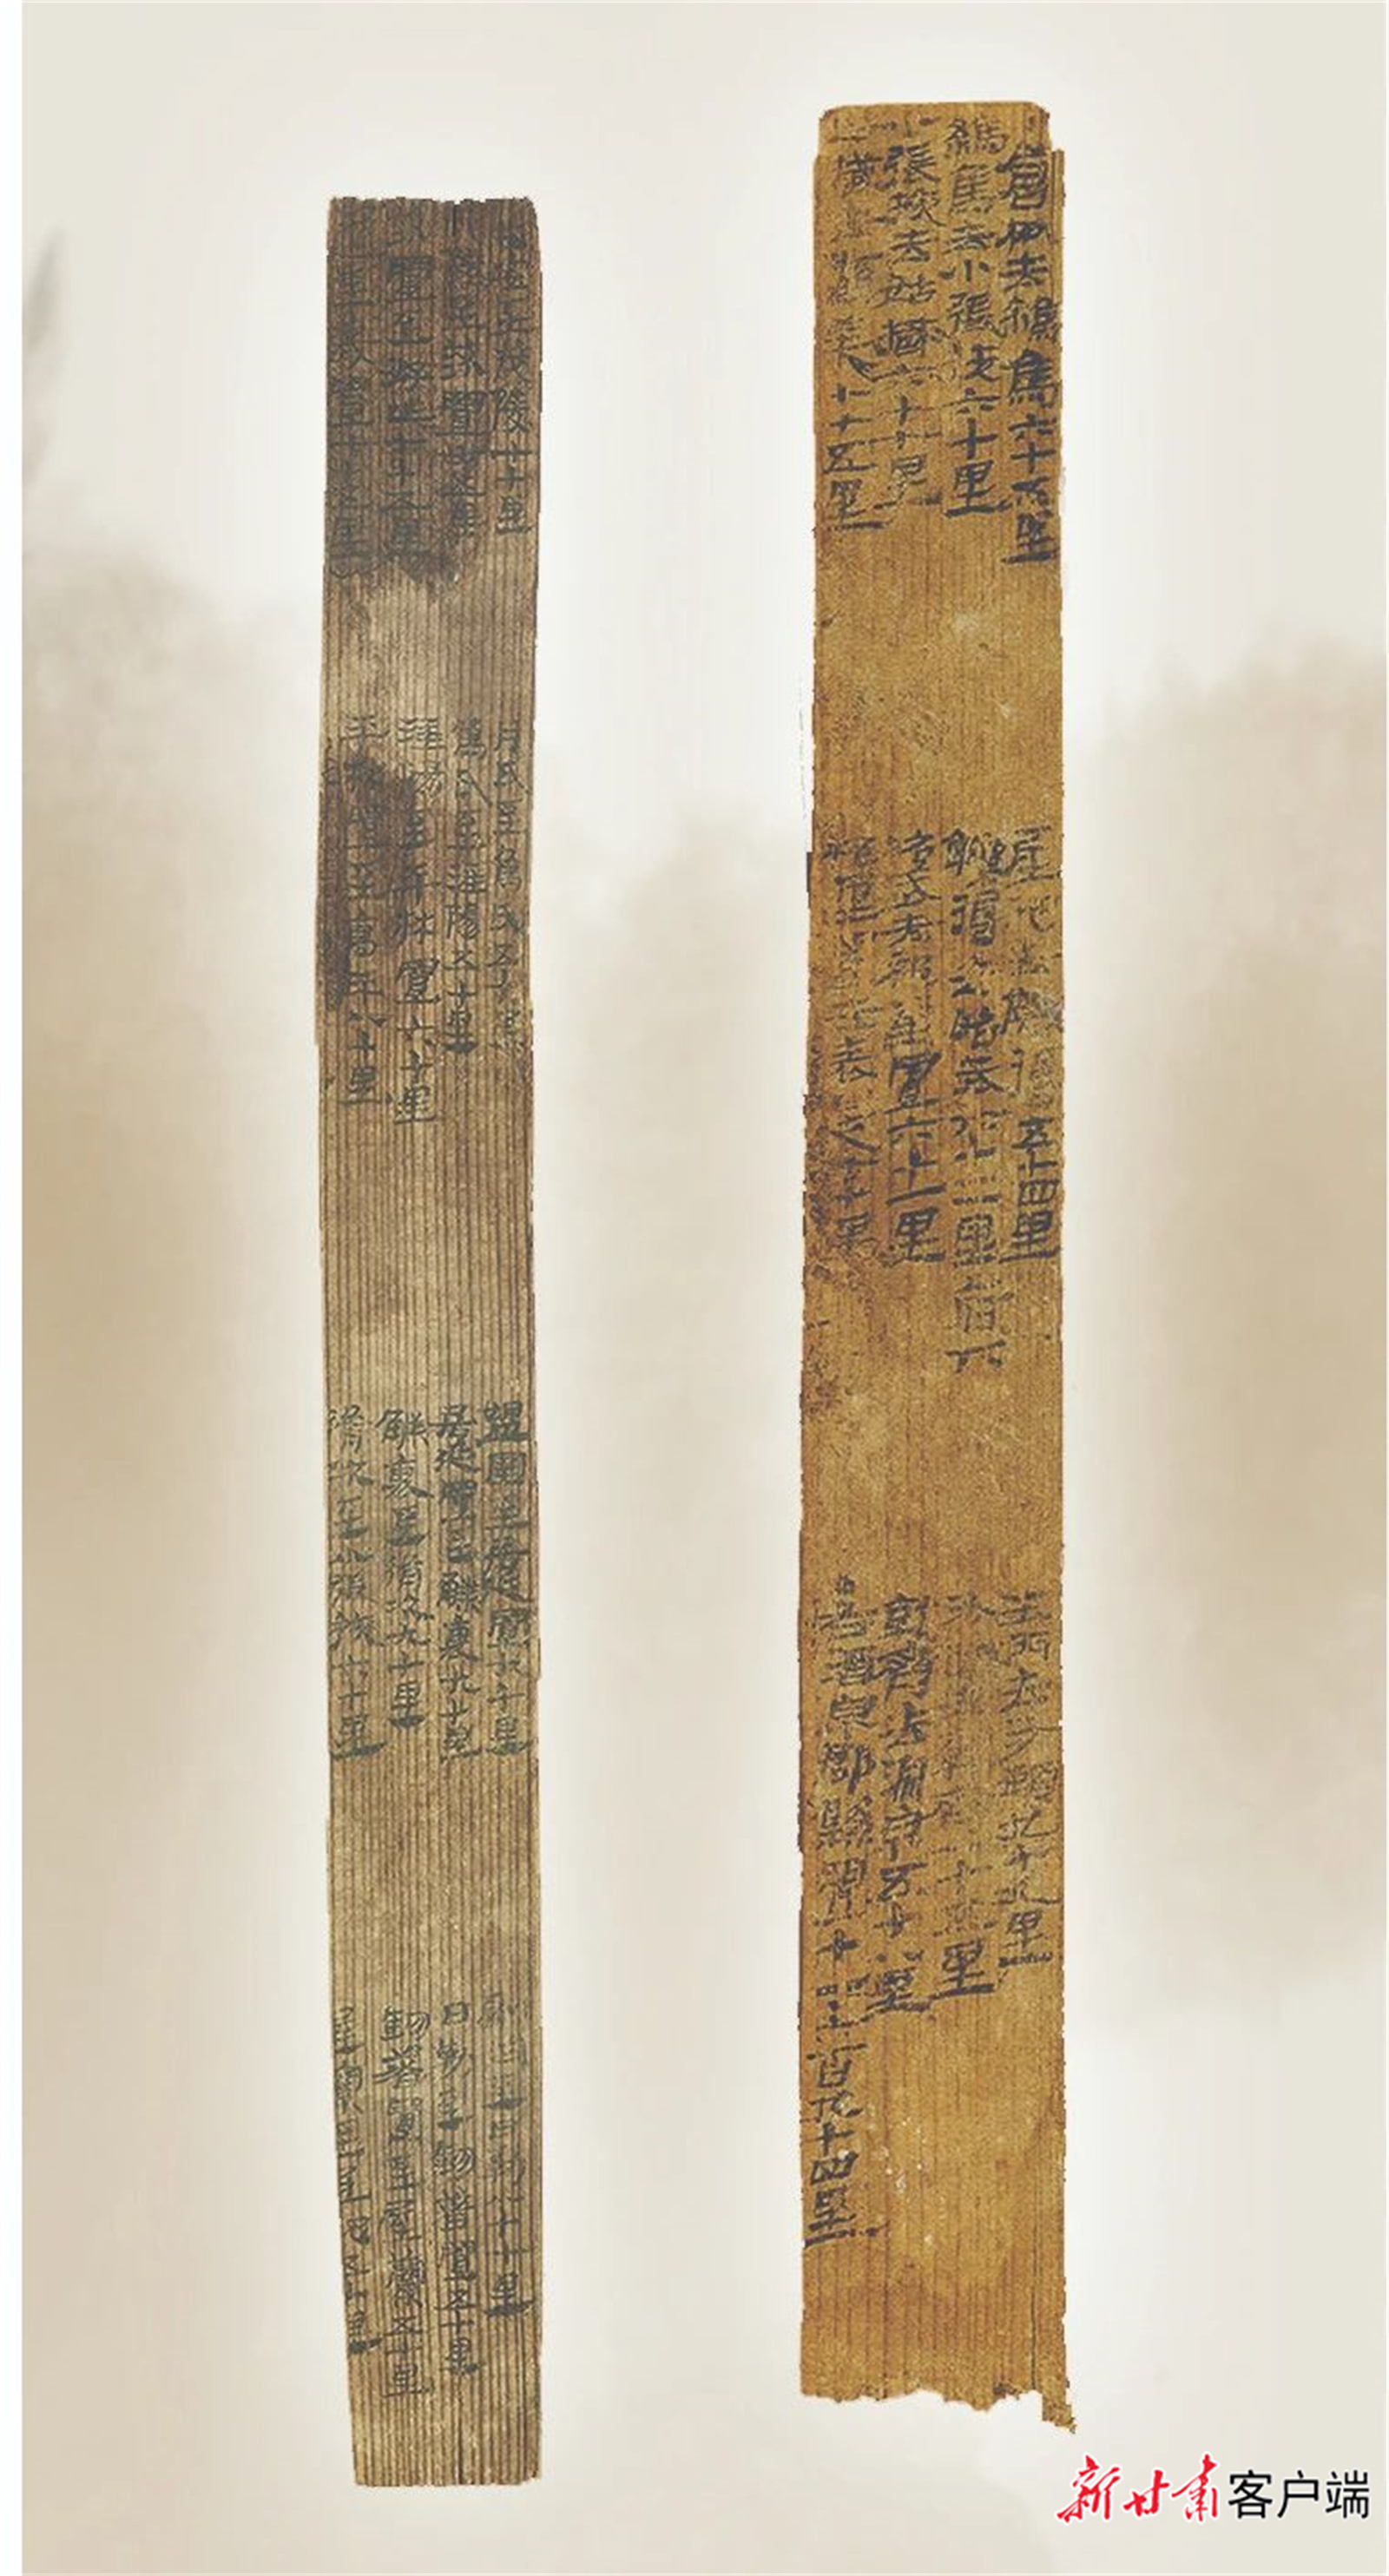 甘肅簡牘博物館藏漢簡居延里程簡（左）和懸泉里程簡。（圖片由甘肅簡牘博物館提供）